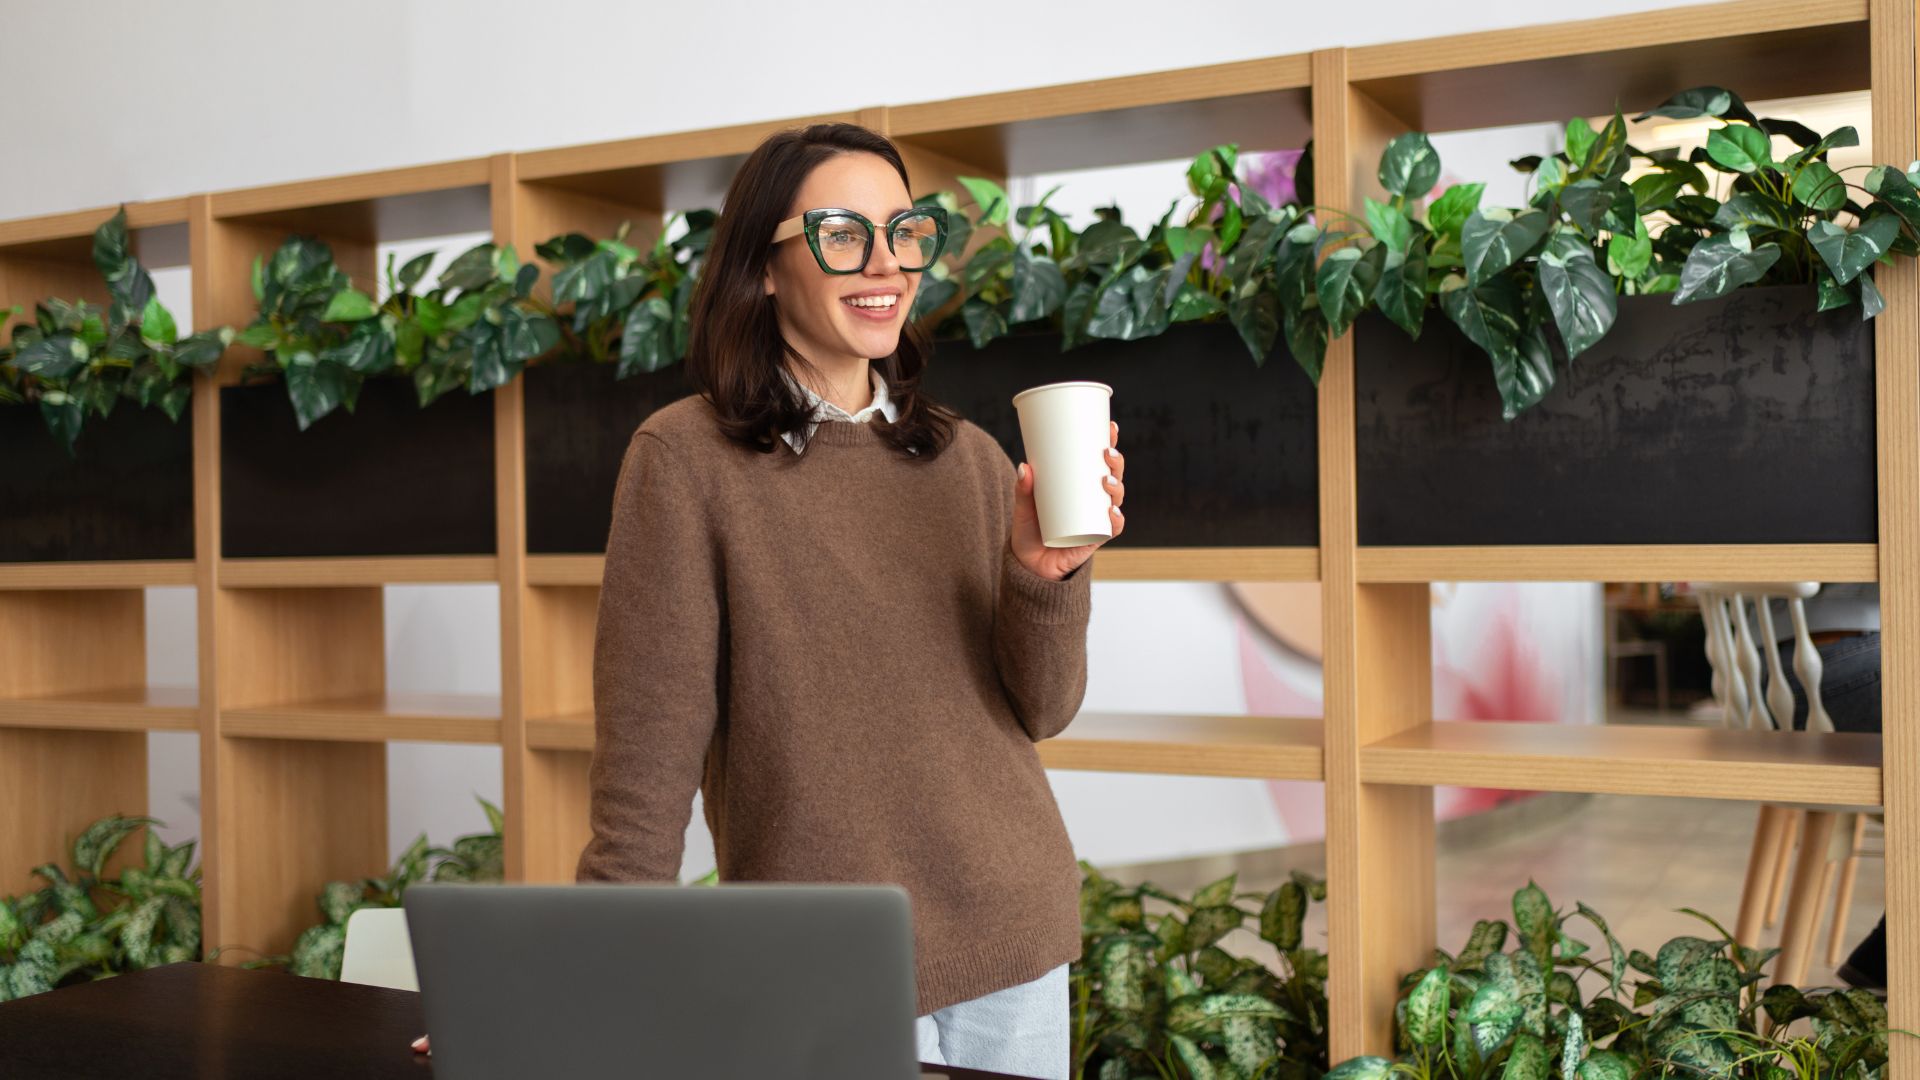 Femme souriante avec café devant ordinateur et plantes.